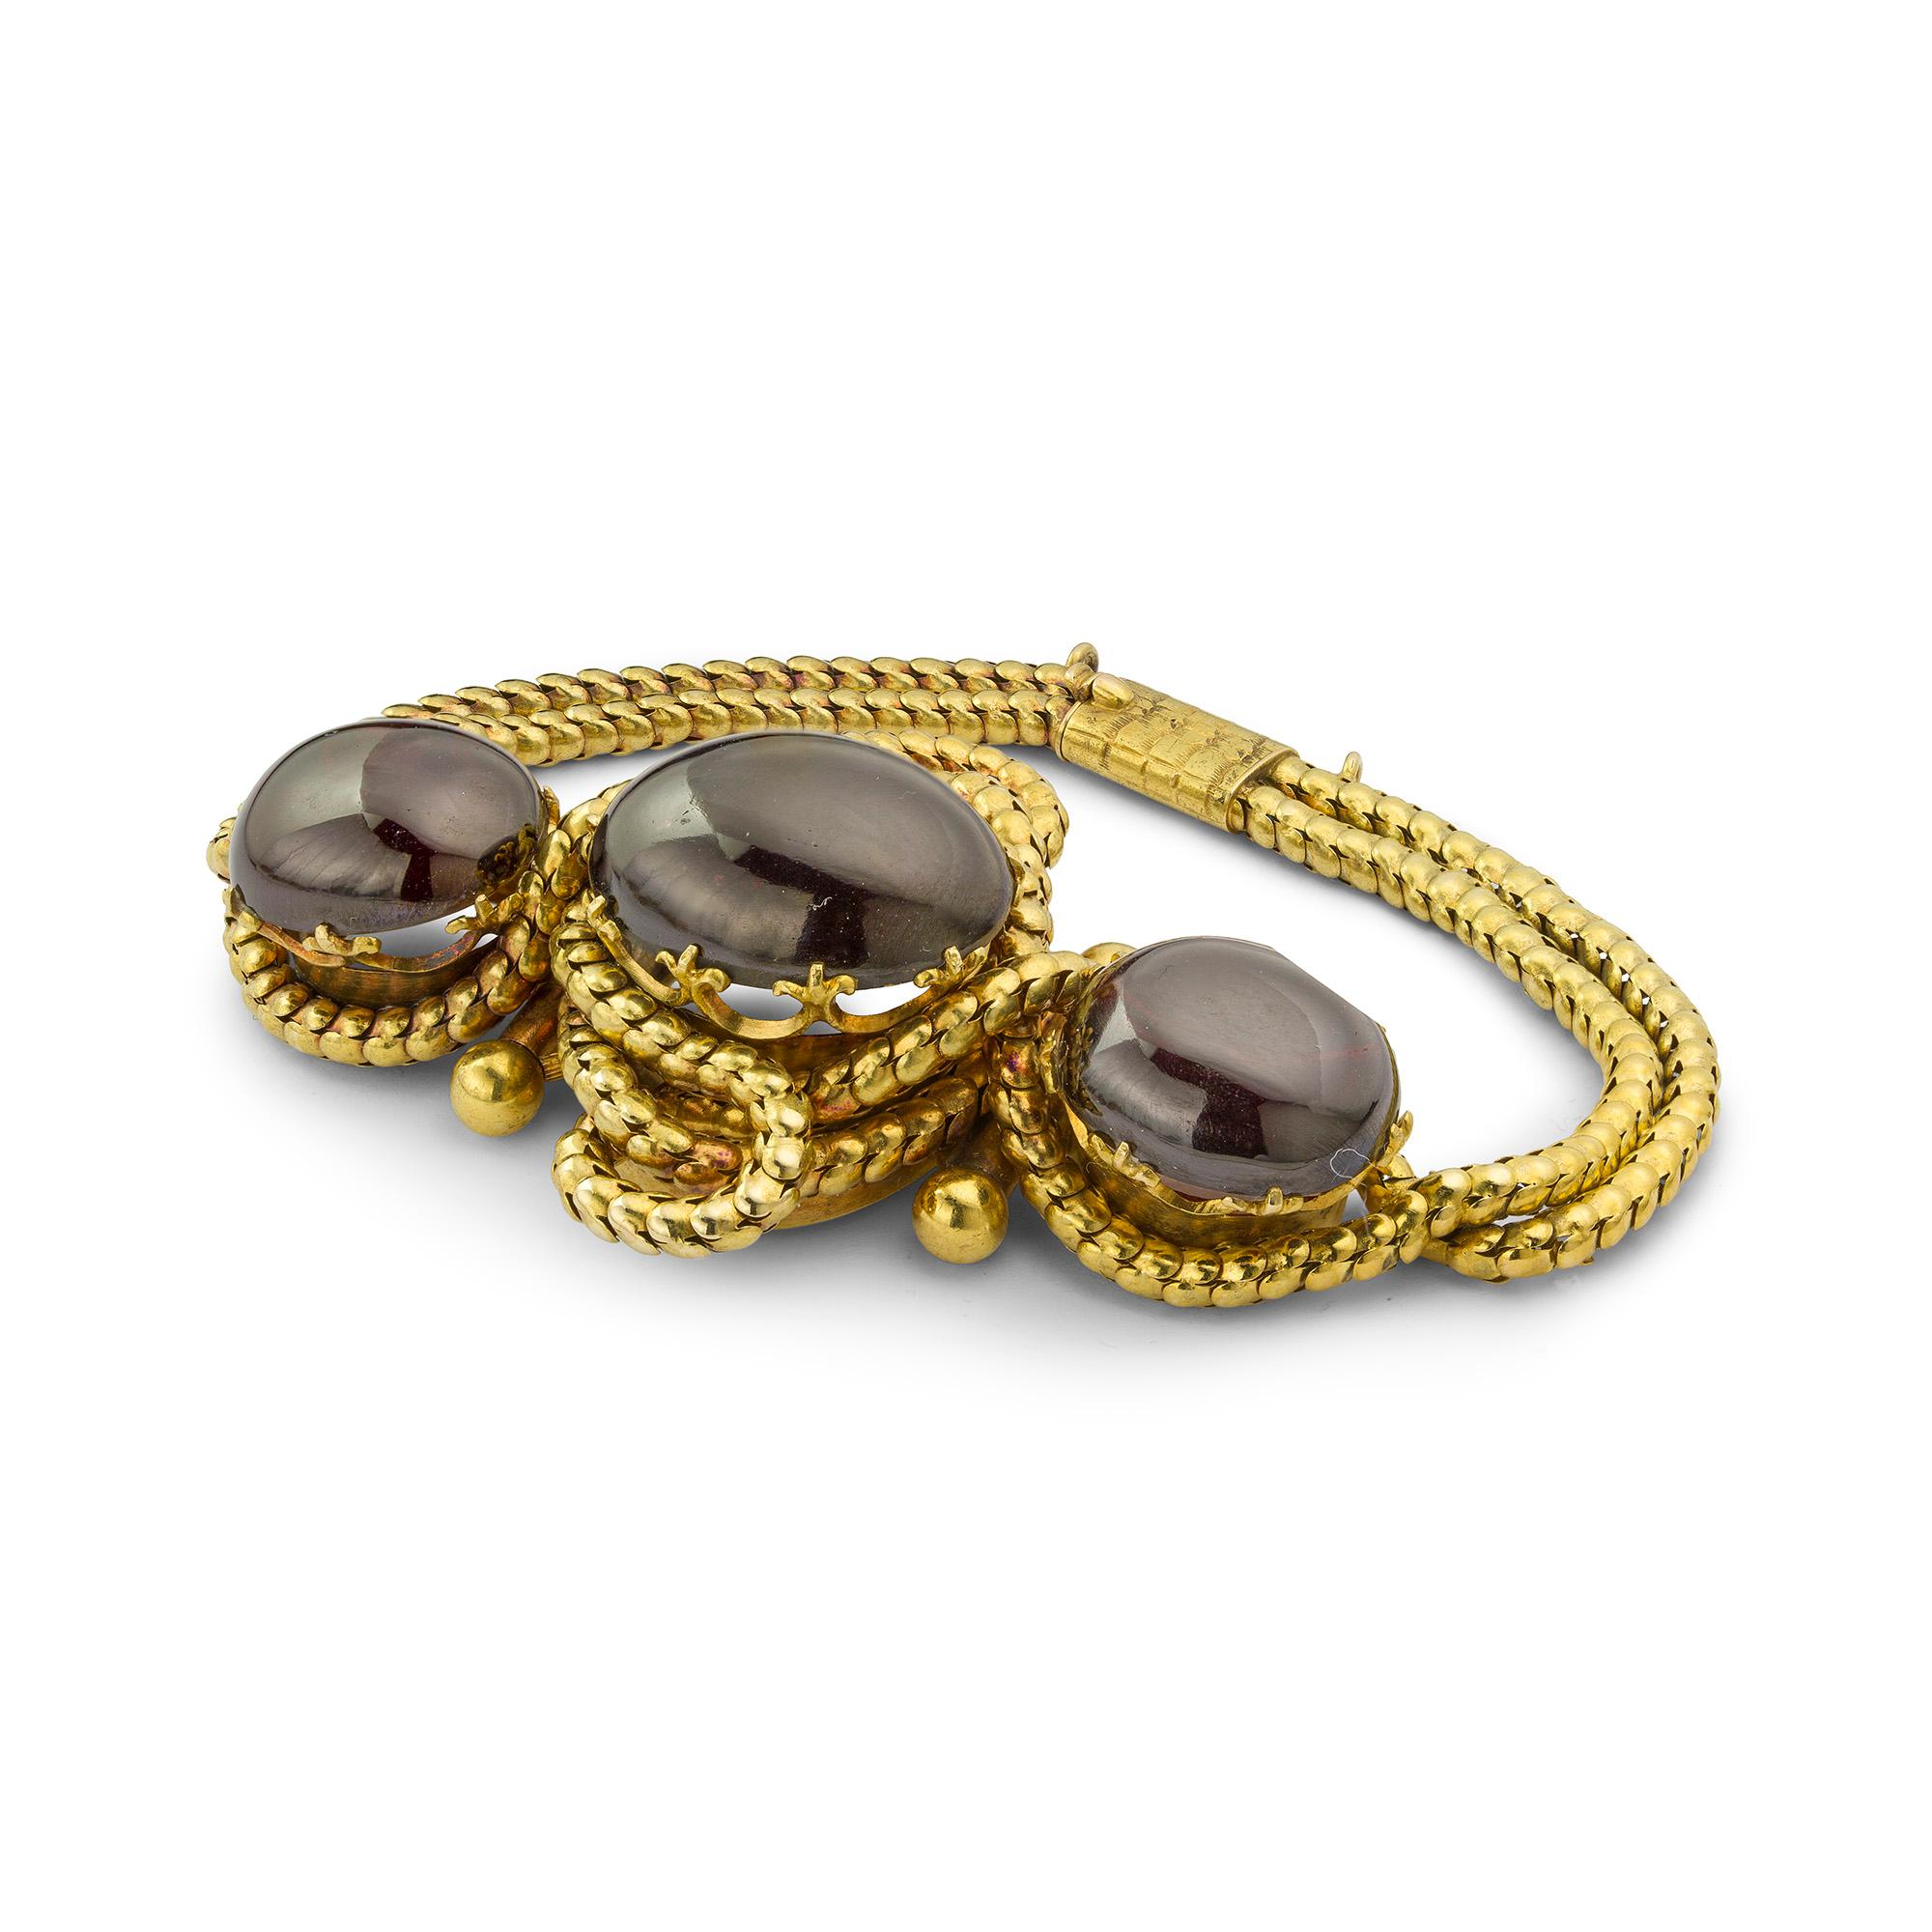 Ein viktorianisches Cabochon-Granat-Armband, der zentrale ovale Cabochon-Granat flankiert von zwei kleineren ovalen Cabochon-Granaten, die jeweils in Fleur-de-Lis gestaltete Krallen eingefasst sind, umgeben von einer geknoteten Goldkette in einer